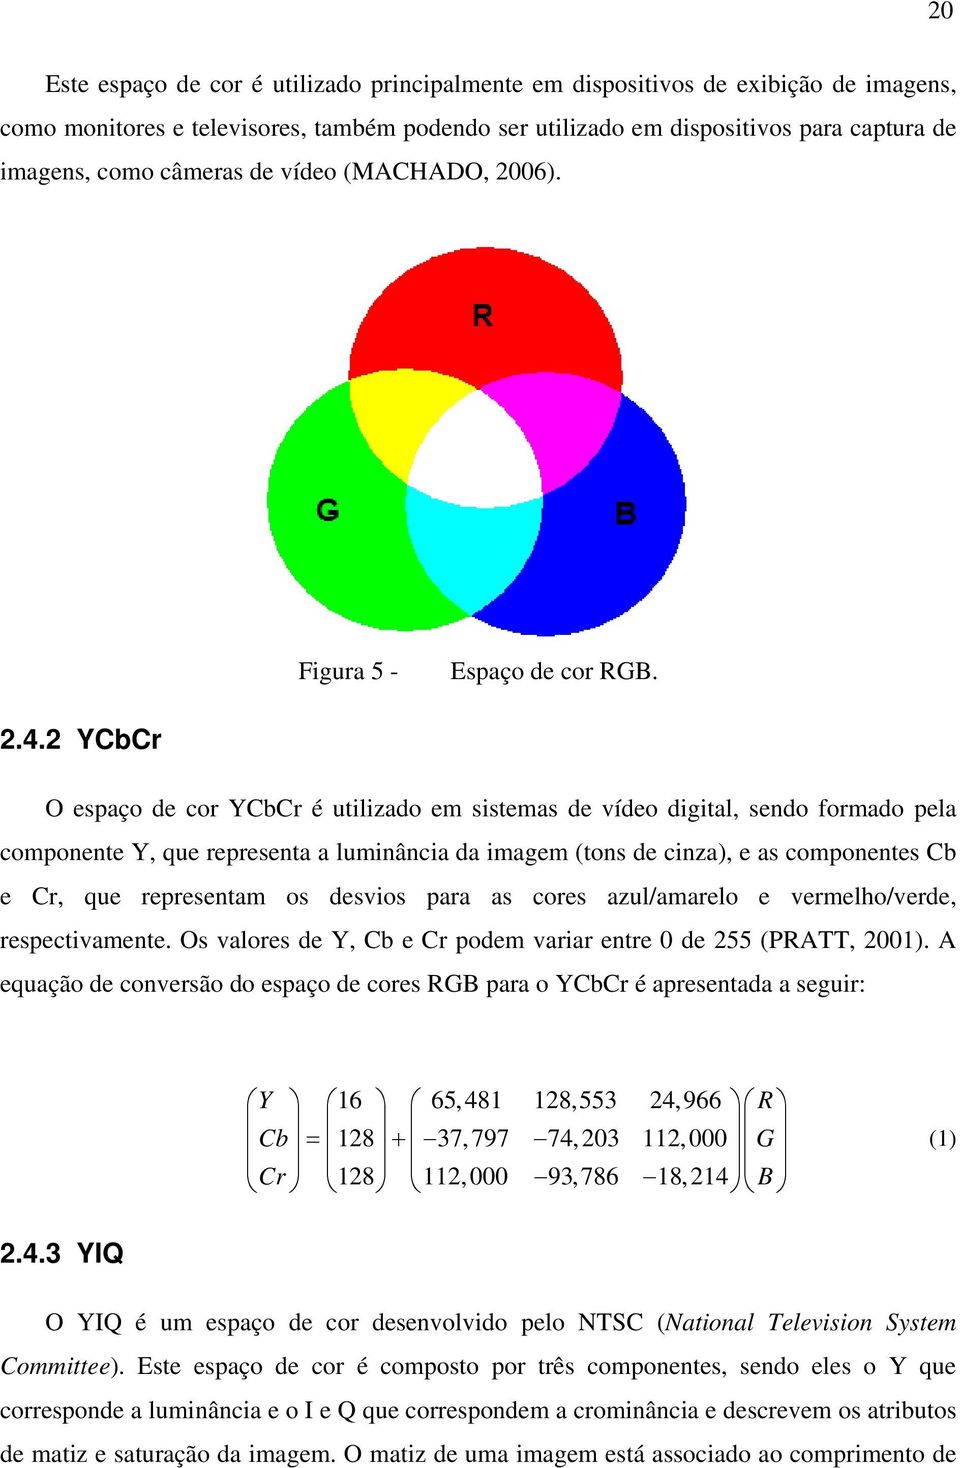 2 YCbCr O espaço de cor YCbCr é utilizado em sistemas de vídeo digital, sendo formado pela componente Y, que representa a luminância da imagem (tons de cinza), e as componentes Cb e Cr, que